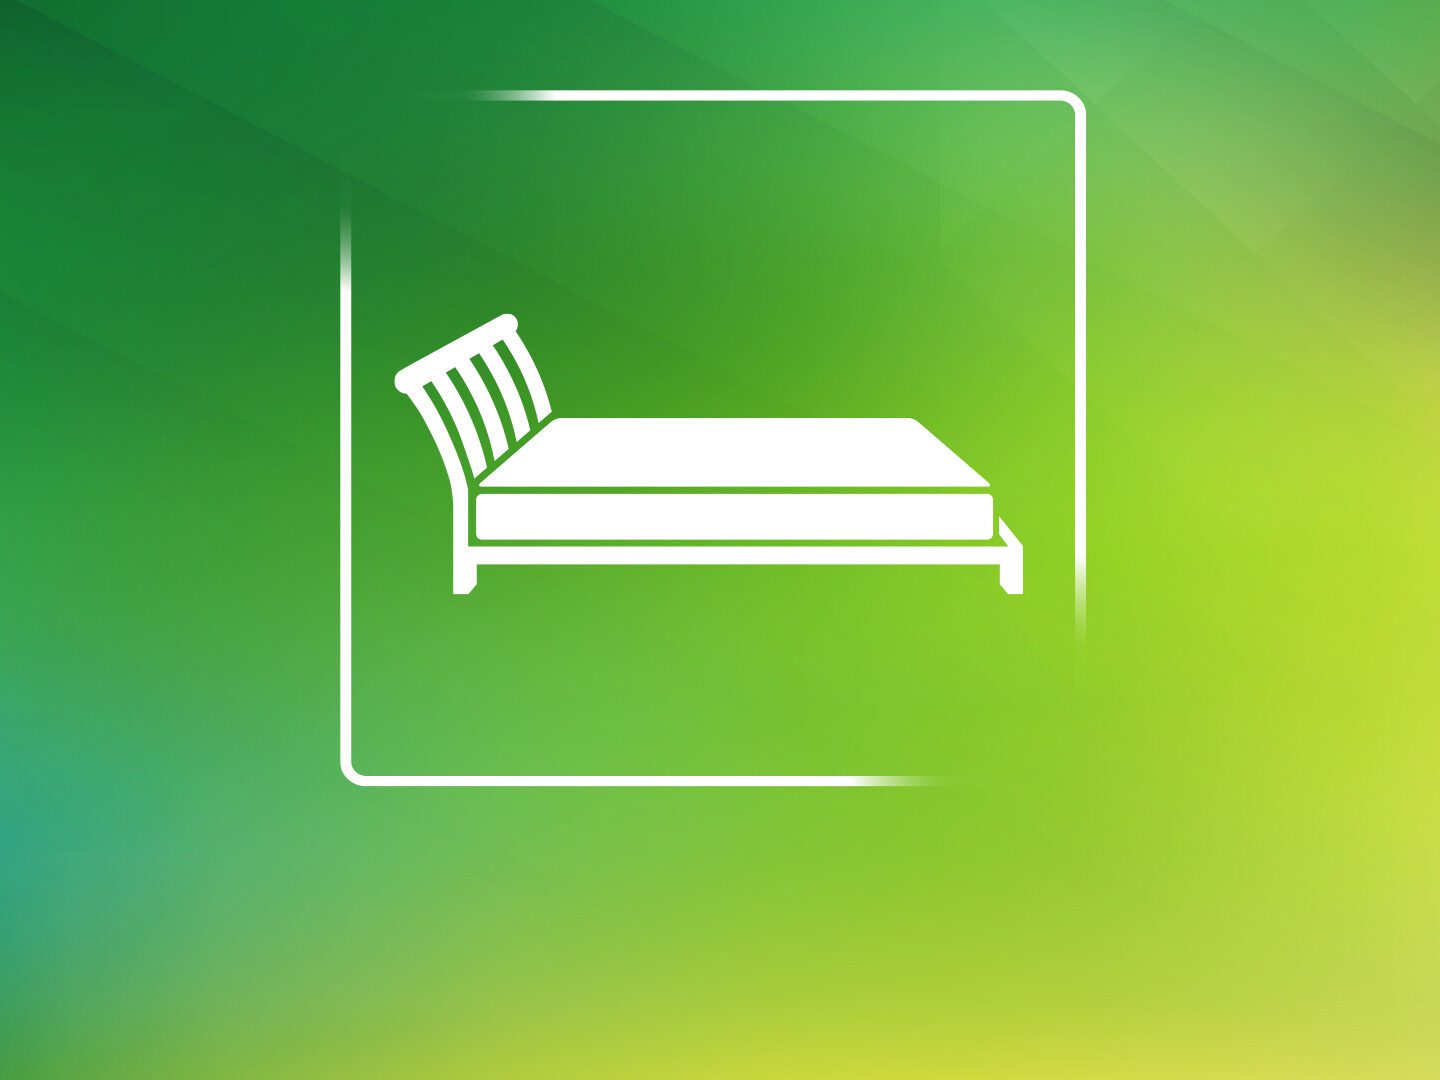 Zeichnung eines Bettes auf grünem Hintergrund